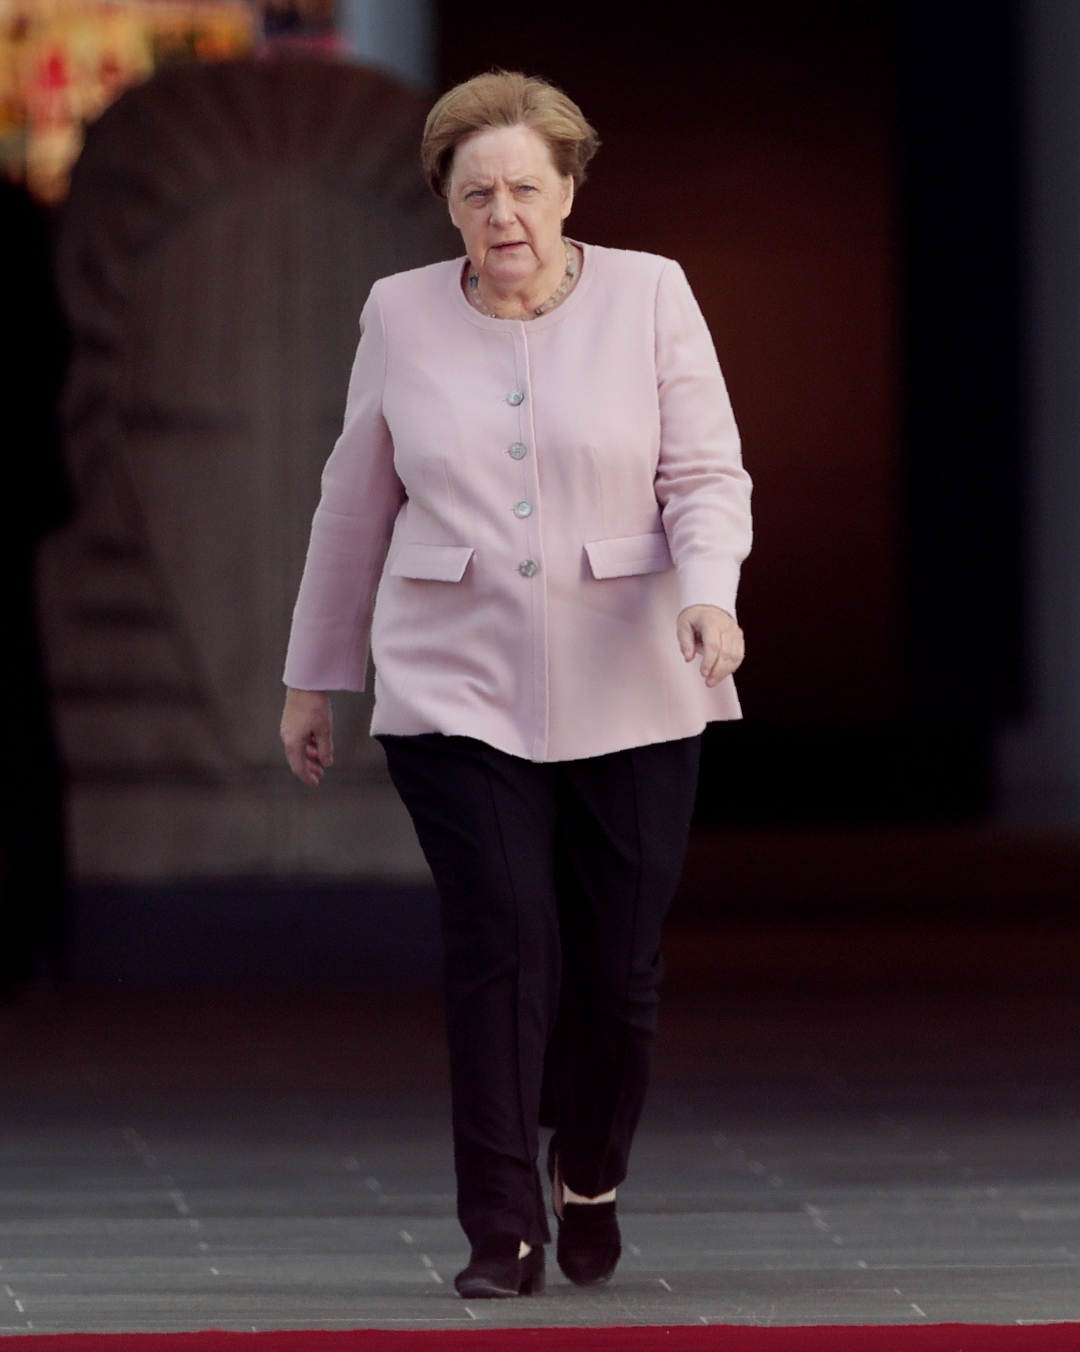 Foto: Angela Merkel, canciller de Alemania, 18 de junio de 2019, Berlín